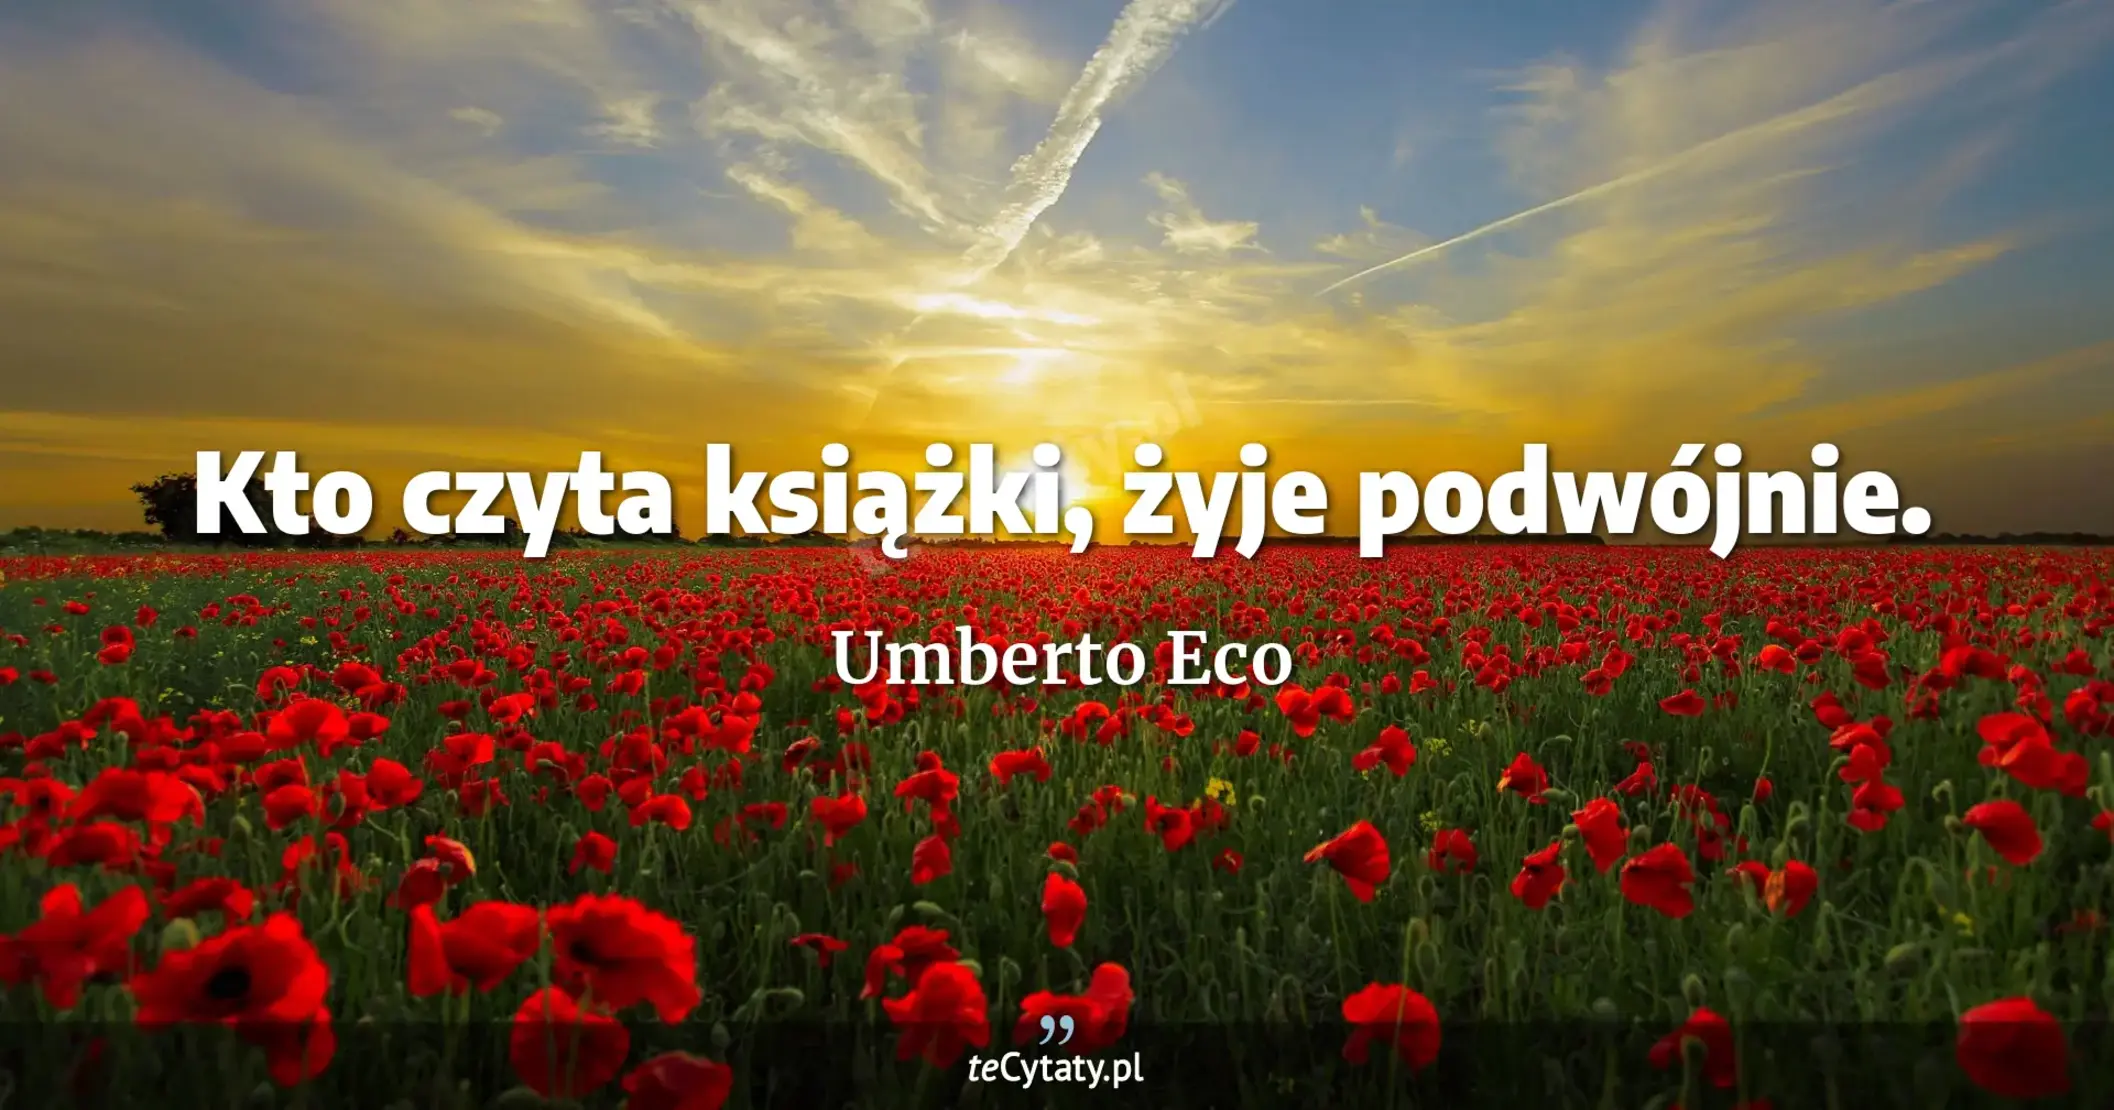 Kto czyta książki, żyje podwójnie. - Umberto Eco